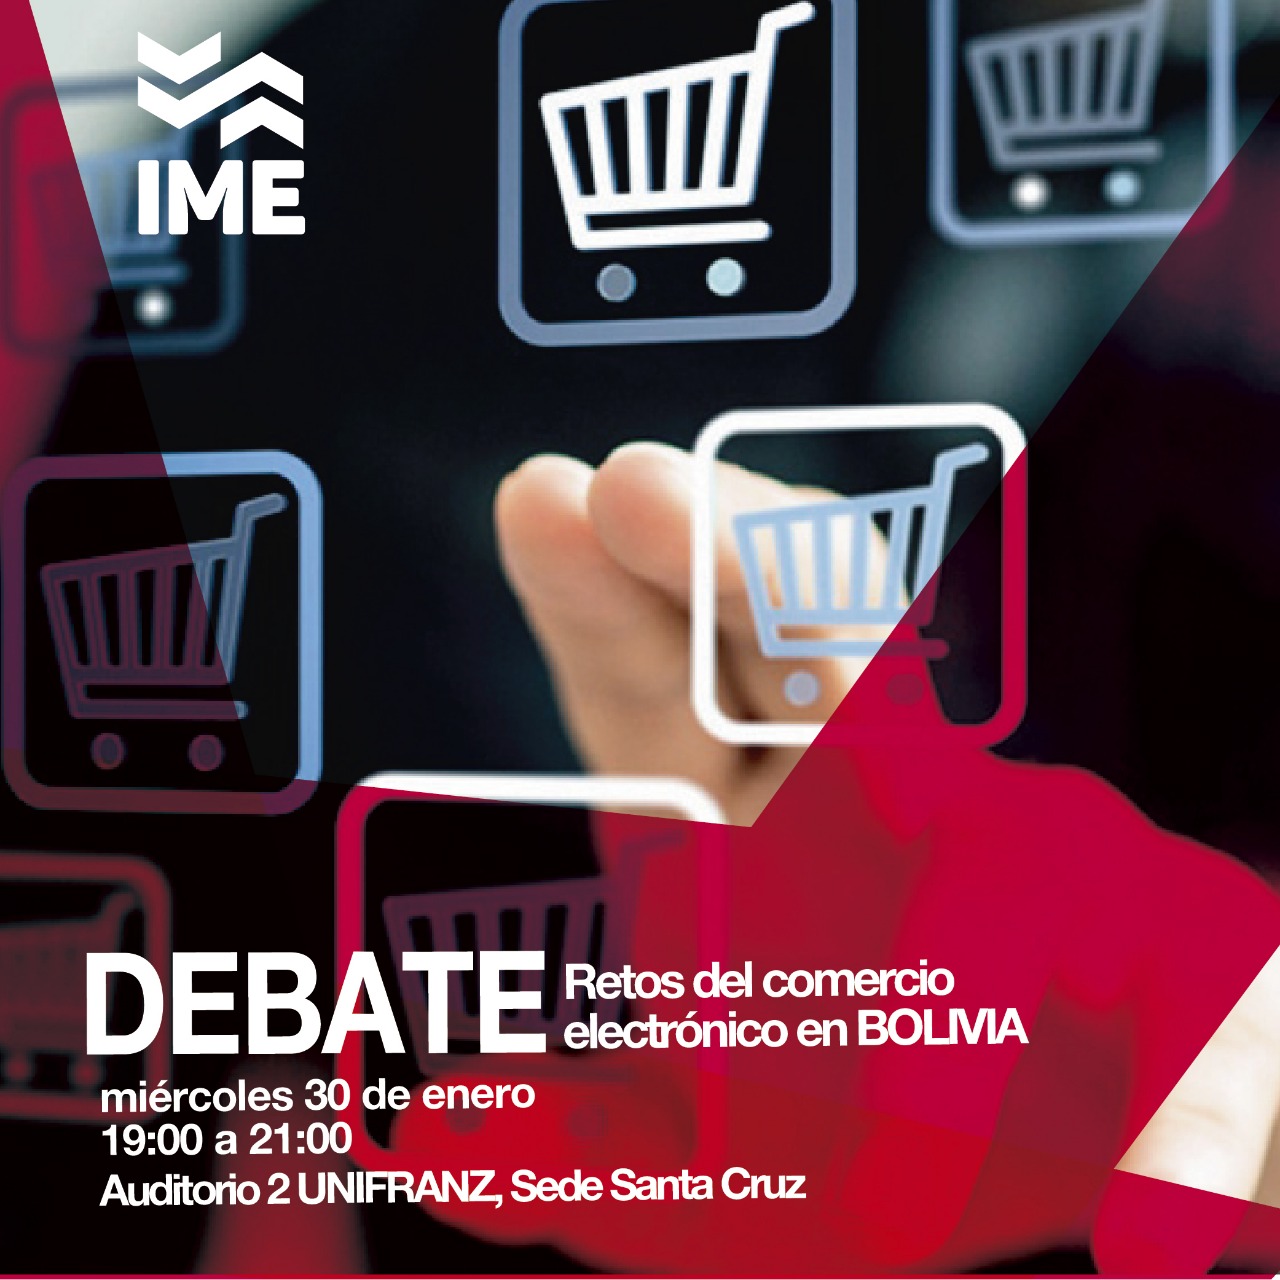 Foro Debate: retos del comercio electrónico en Bolivia en universidad privada UNIFRANZ